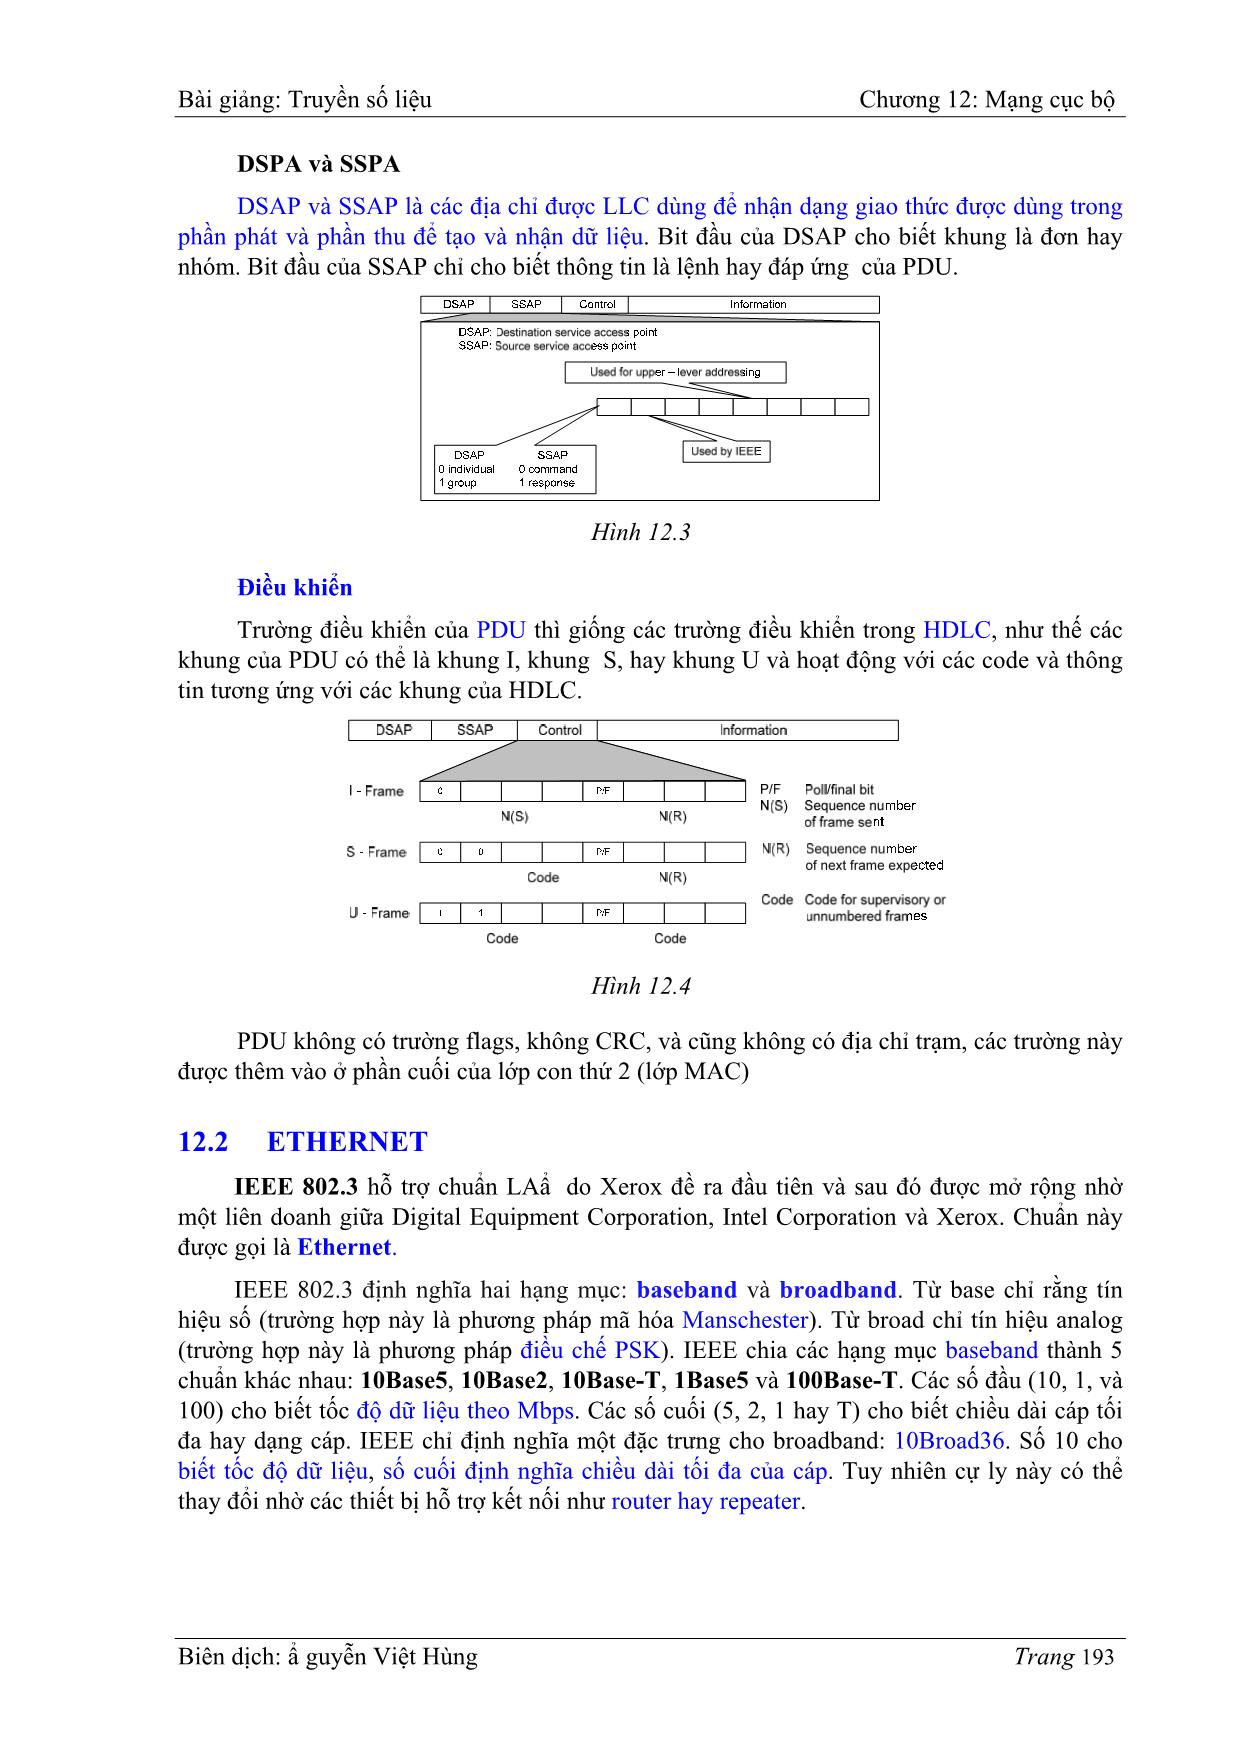 Bài giảng Truyền số liệu - Chương 12: Mạng cục bộ (LAN: Local area networks) - Nguyễn Việt Hùng trang 3